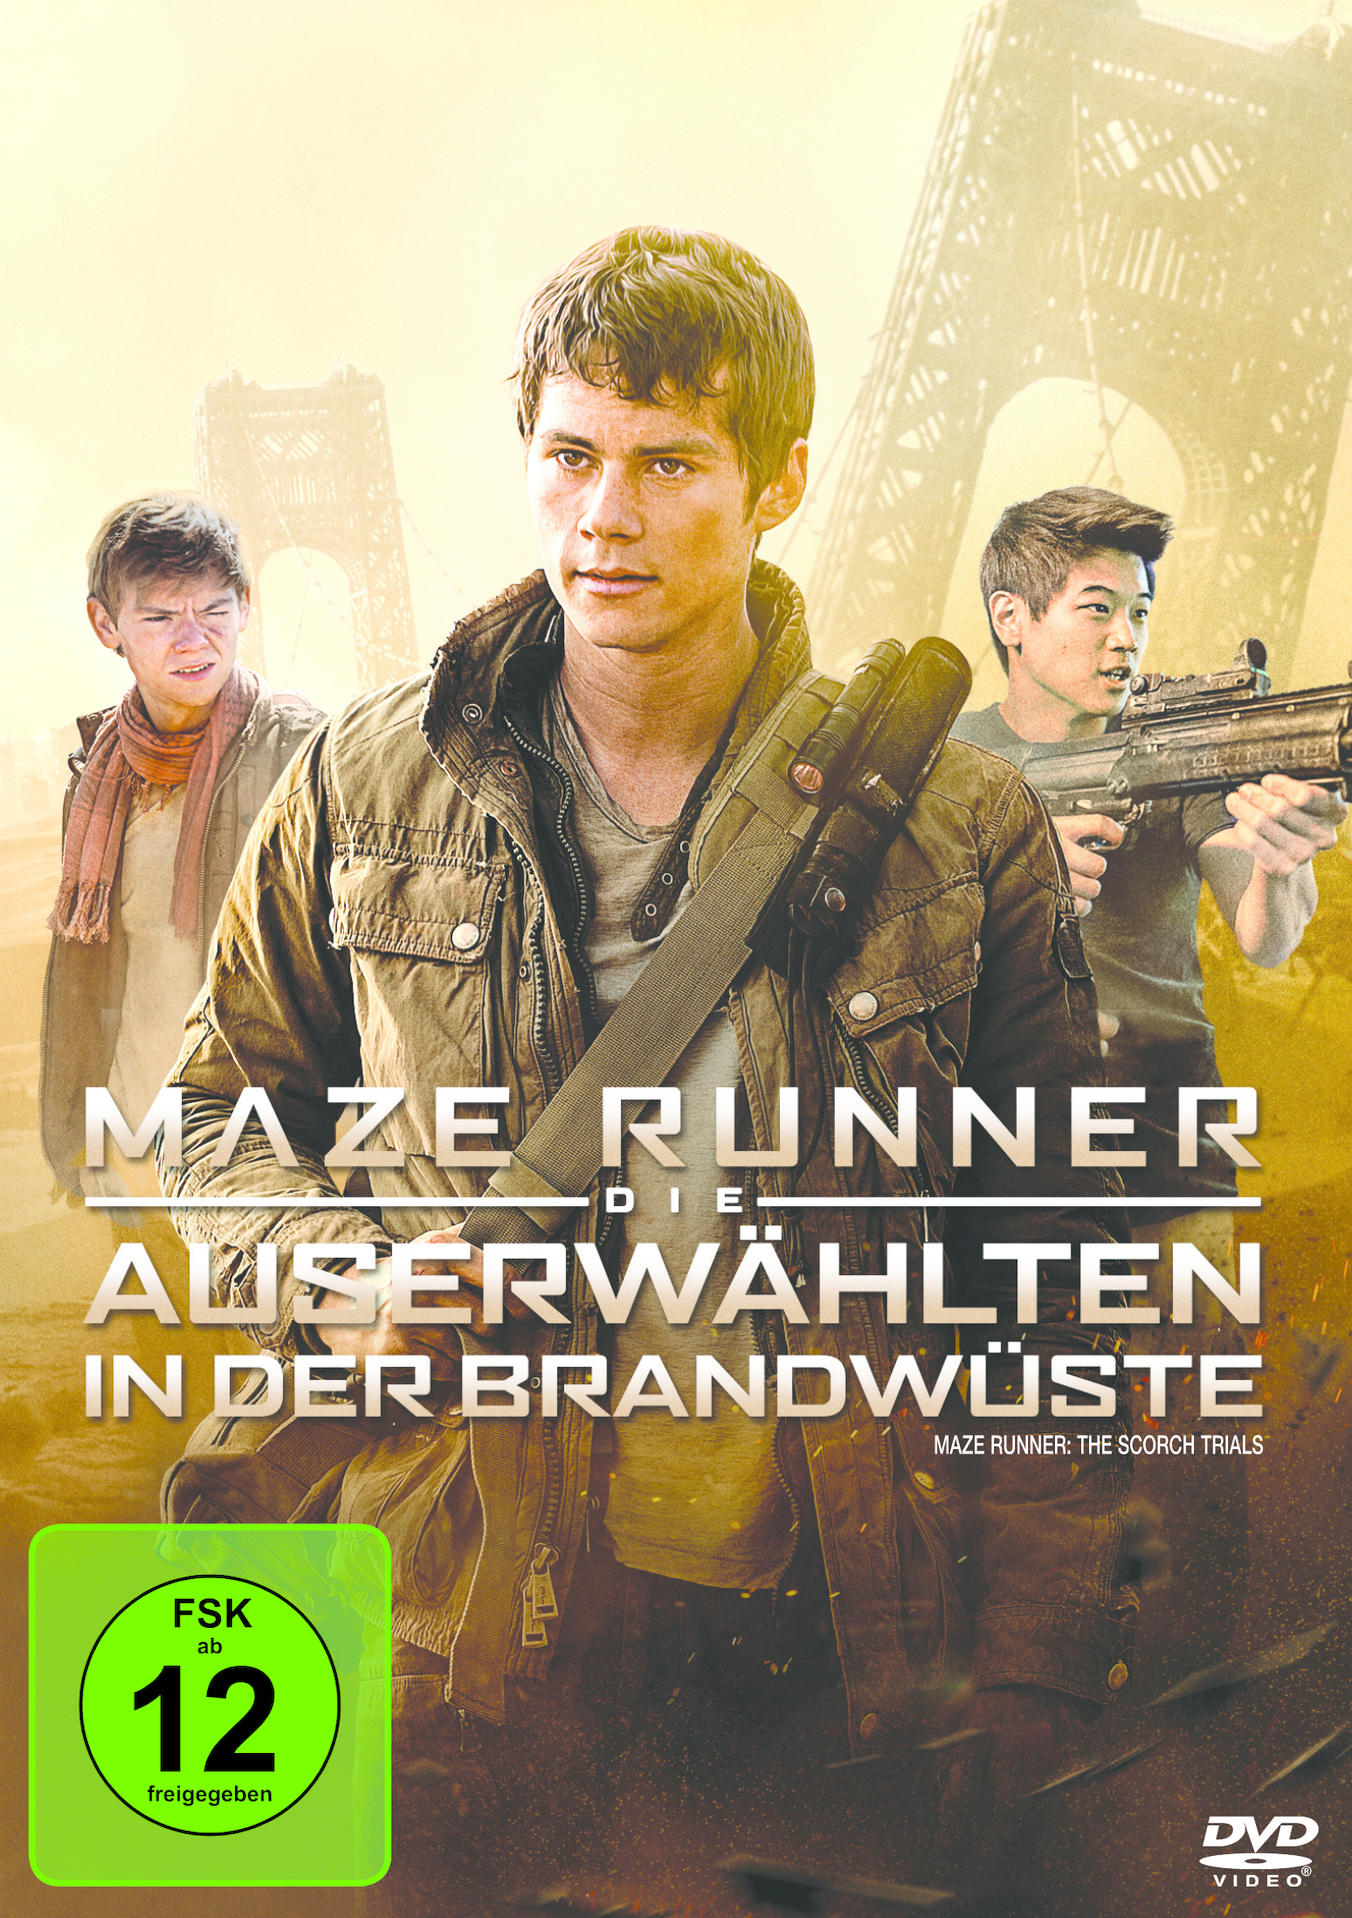 2 - Auserwählten Brandwüste in DVD Runner Maze Die der